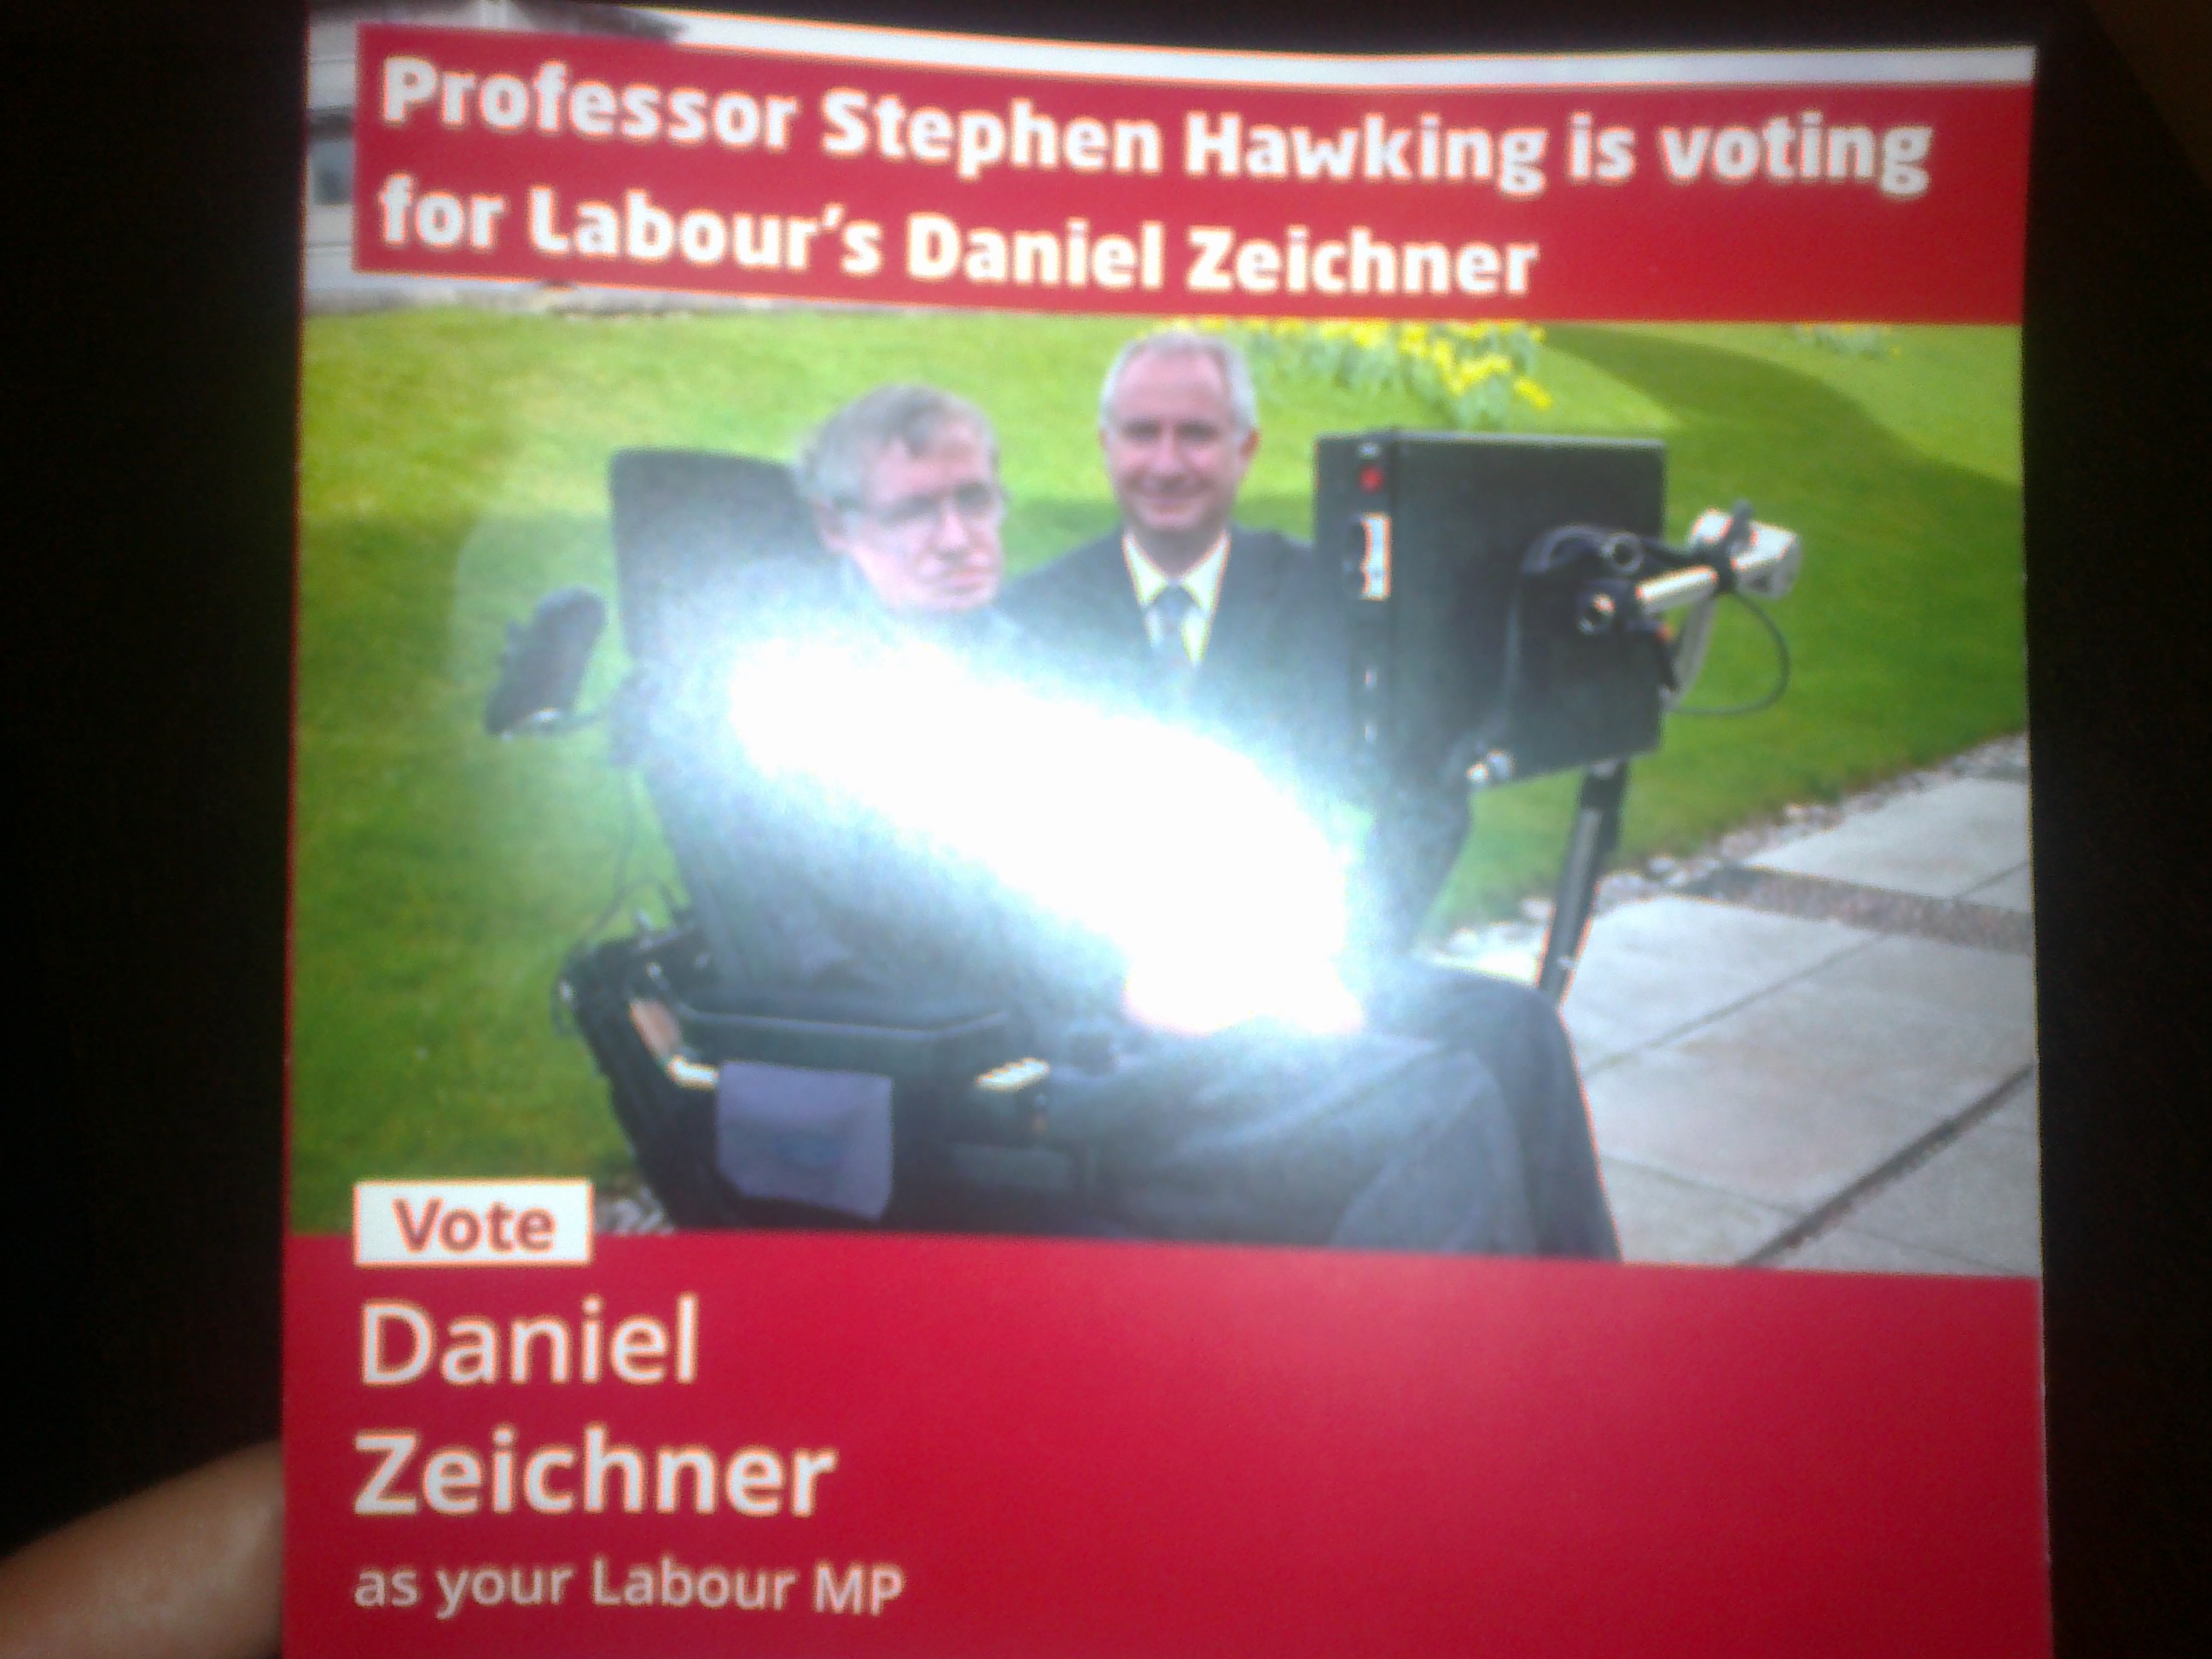 Professor Stephen Hawking is voting for Daniel Zeichner